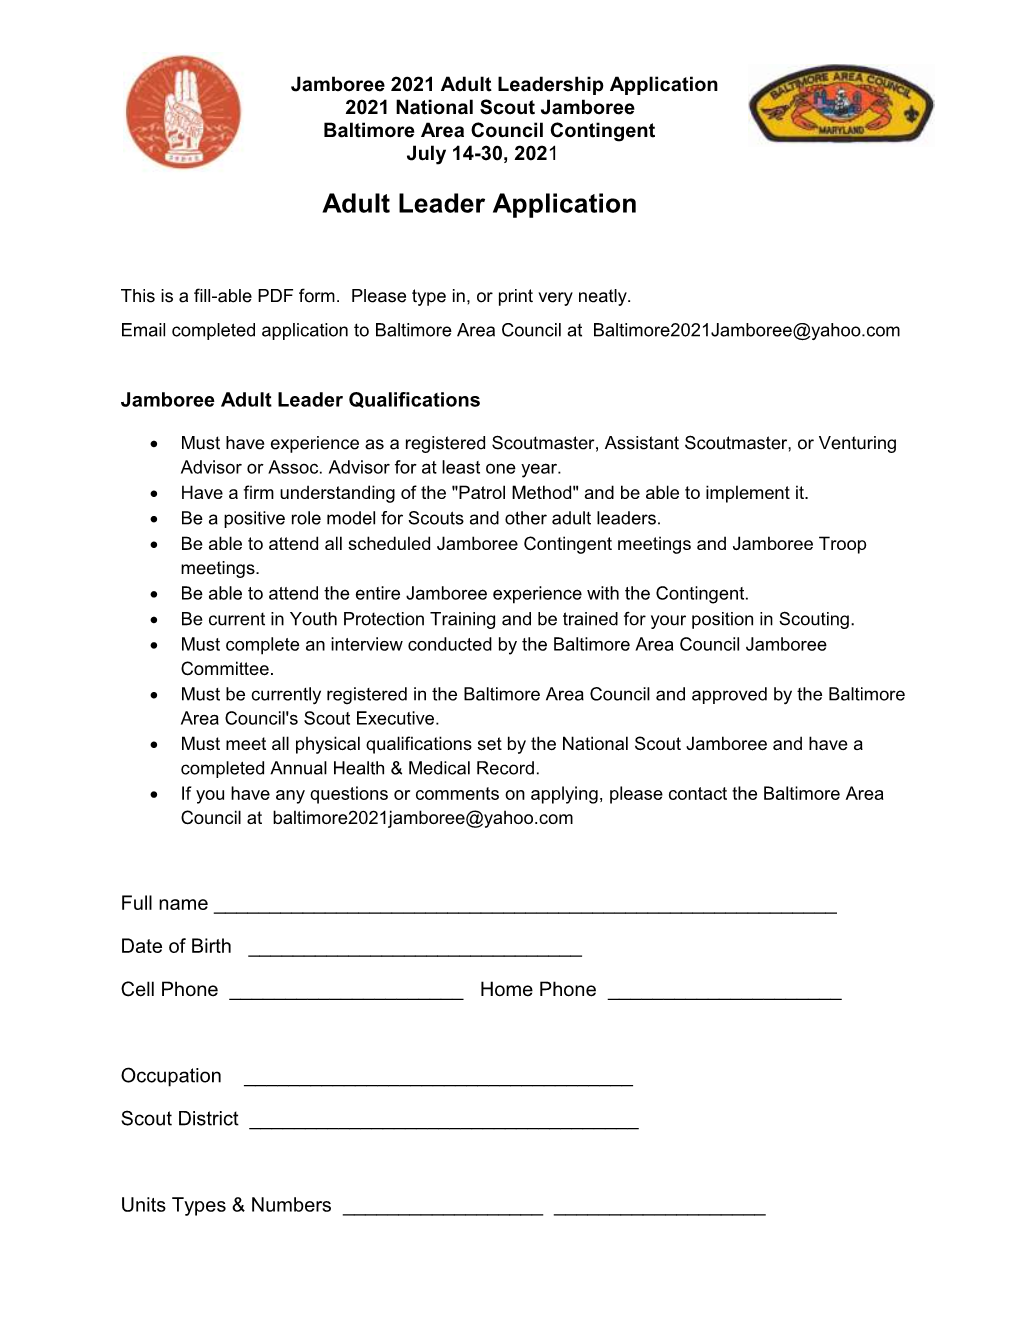 Adult Leader Application